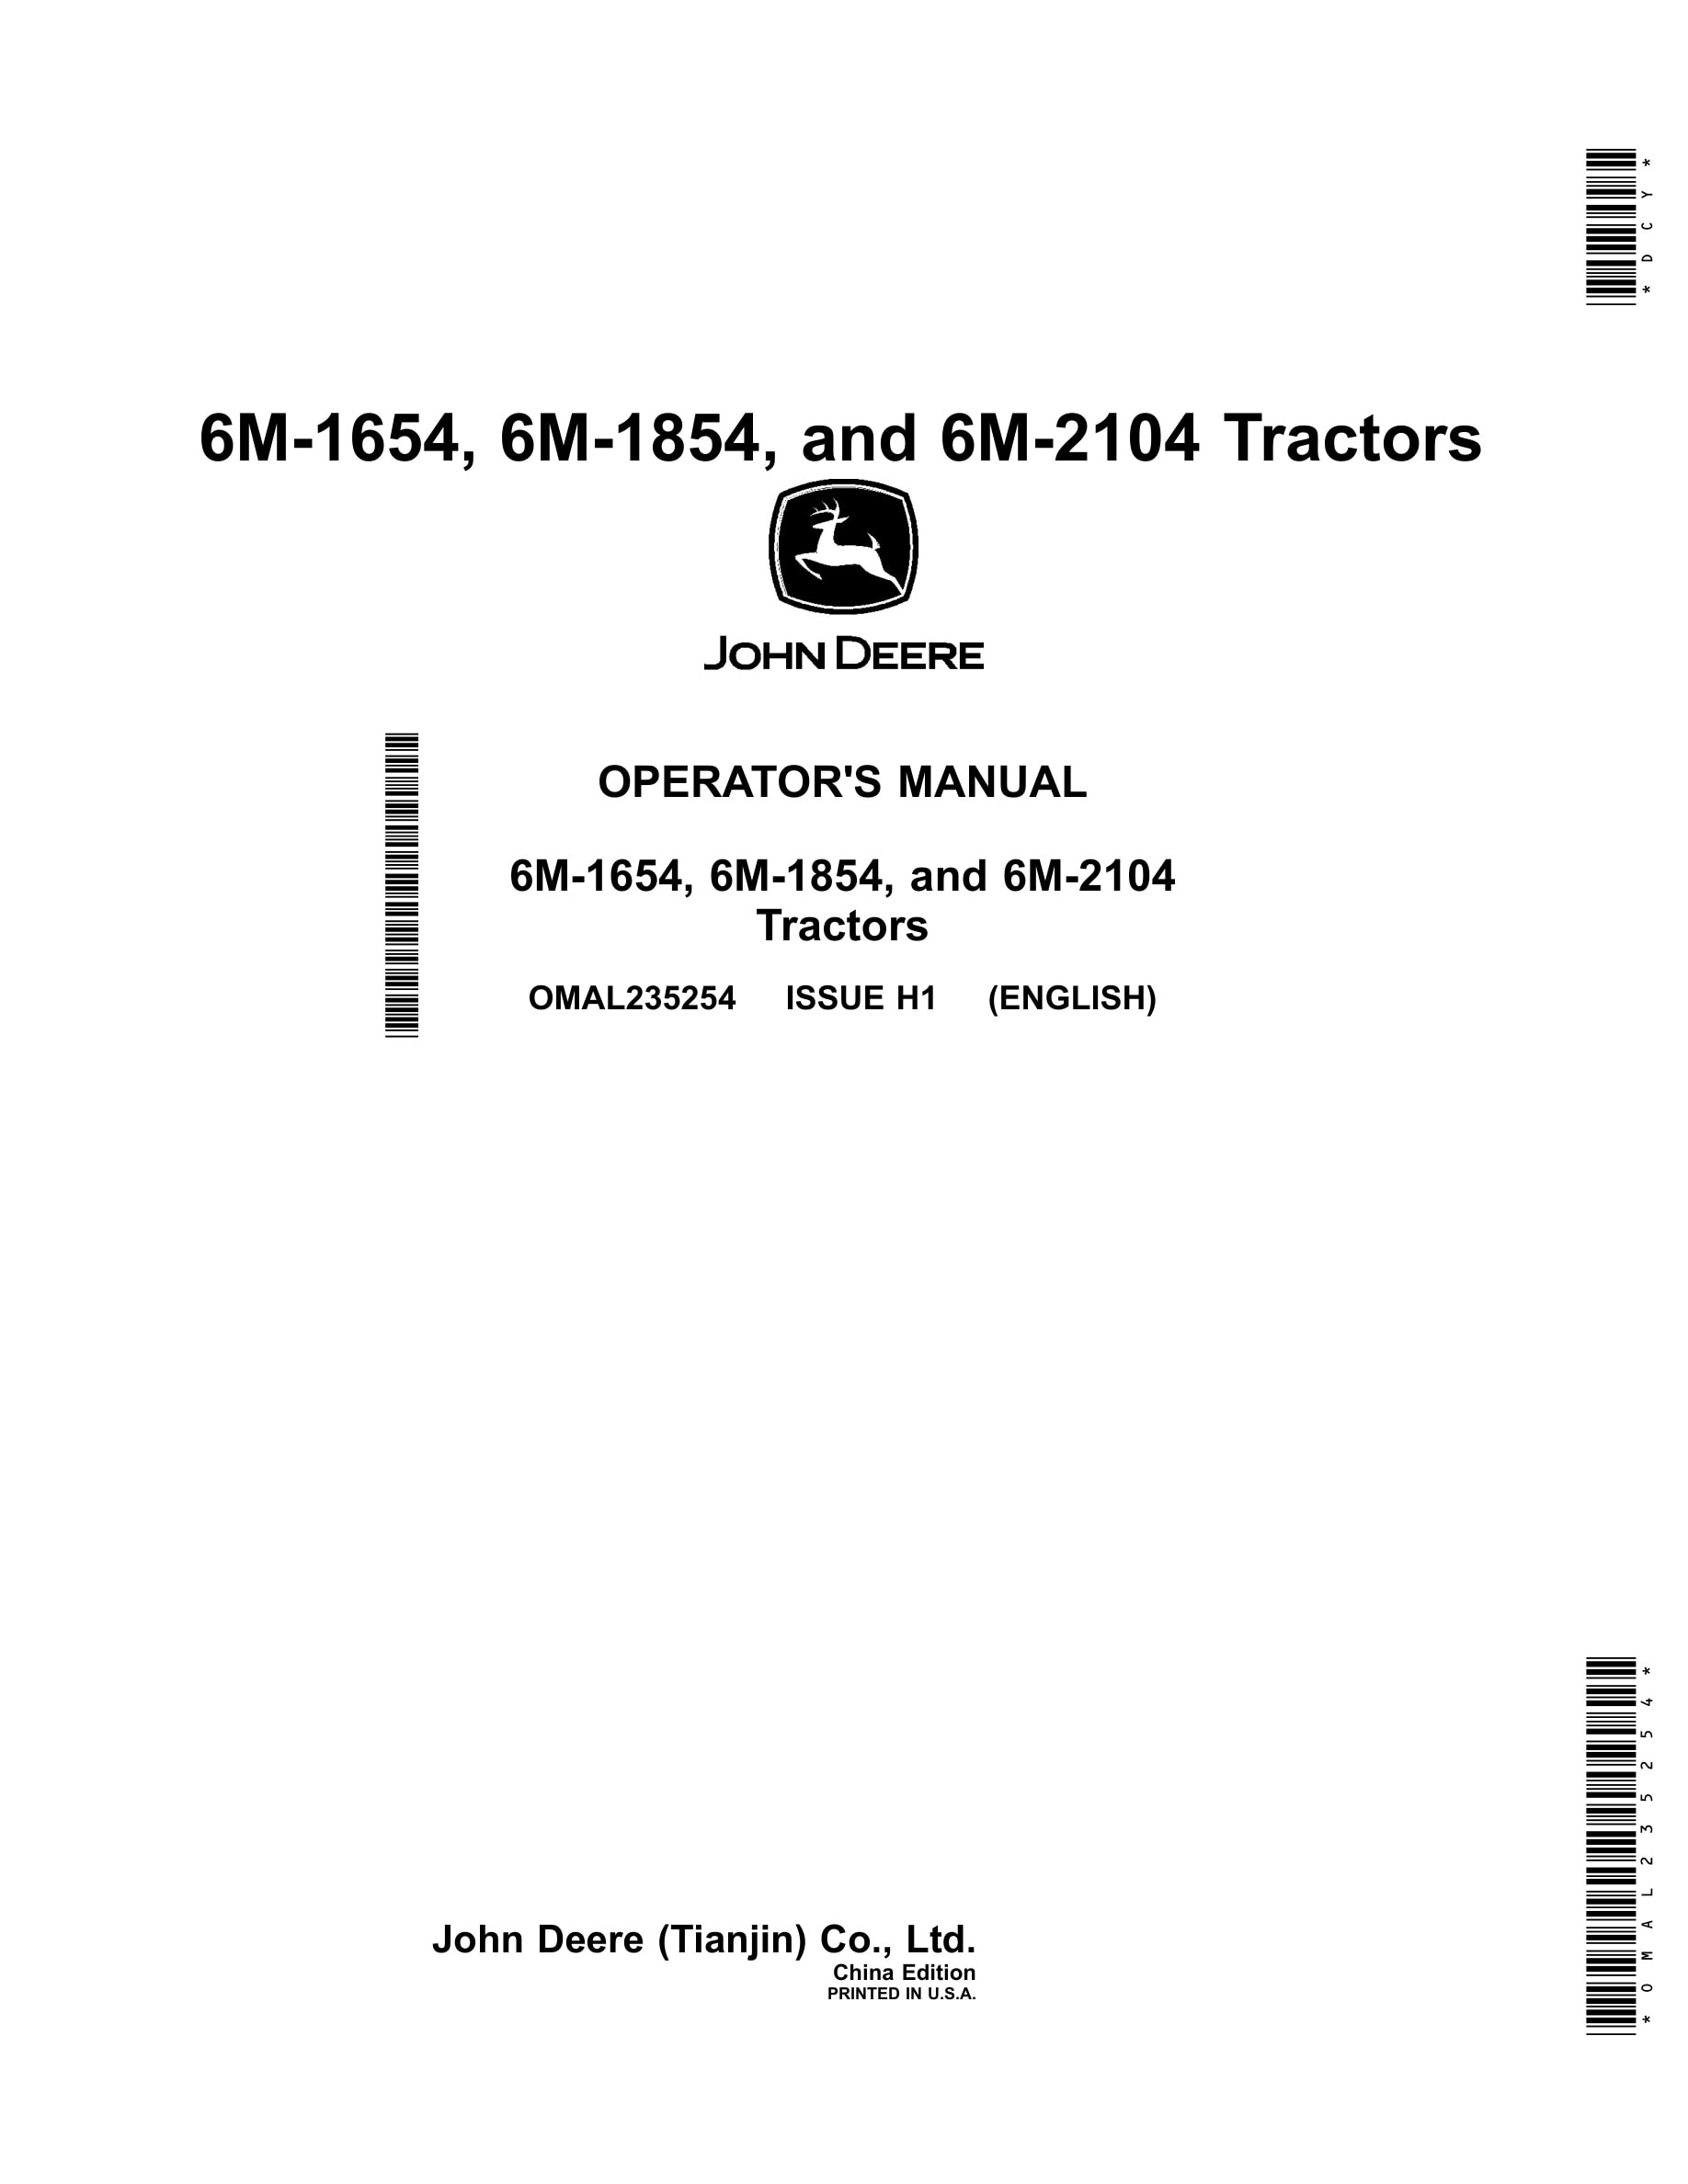 John Deere 6m-1654, 6m-1854, And 6m-2104 Tractors Operator Manuals OMAL235254-1